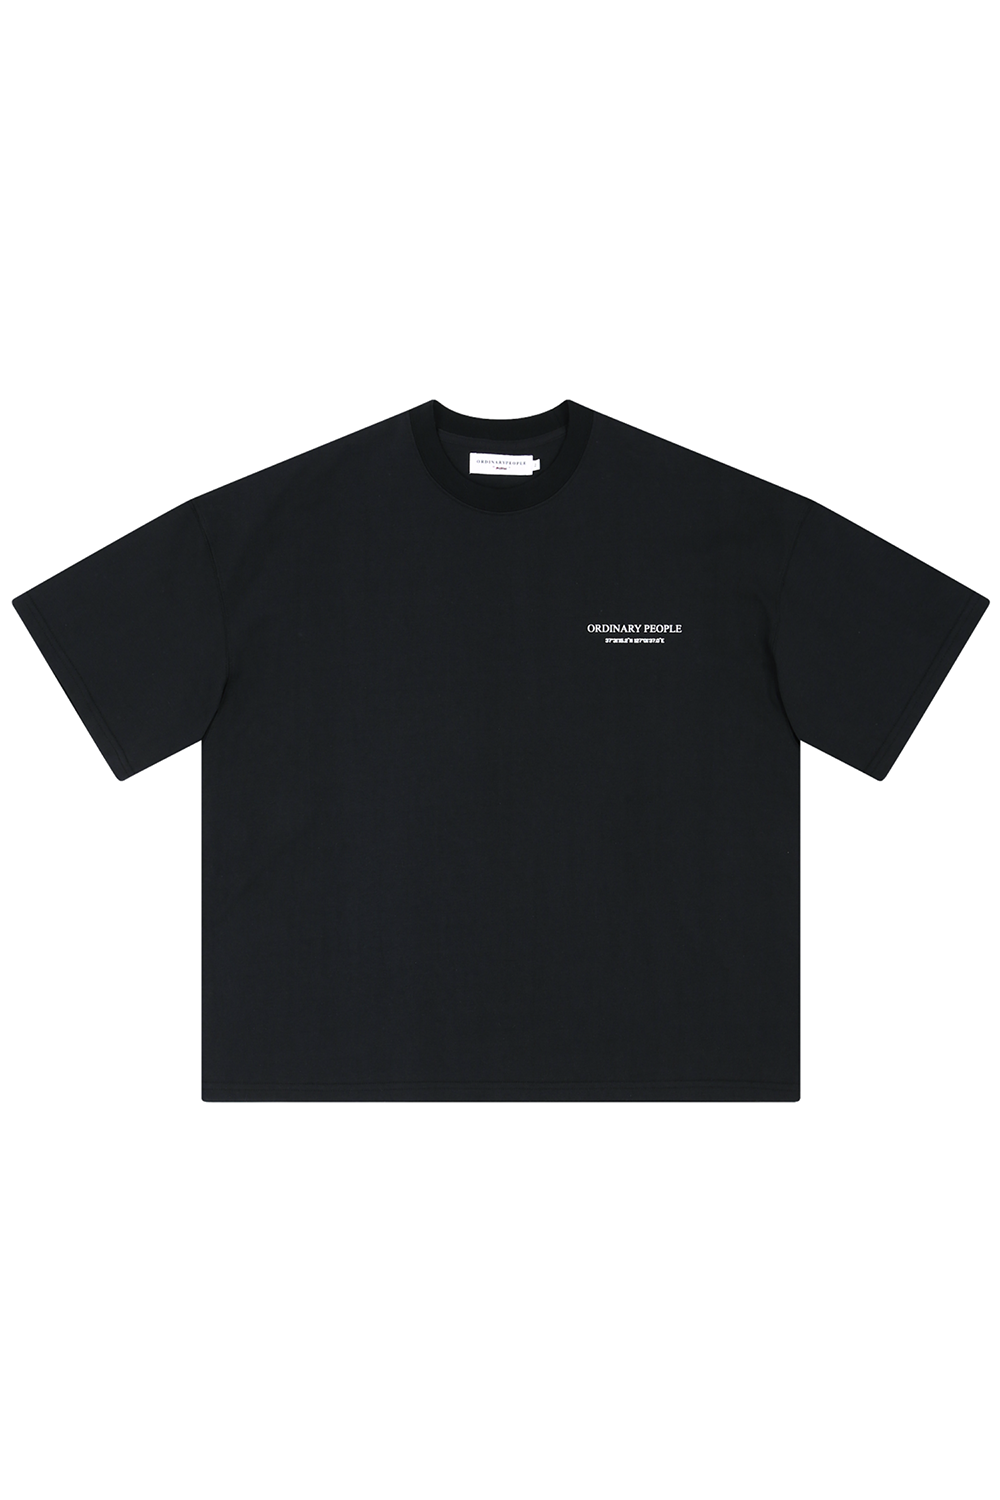 [5월 18일 예약발송] 오디너리 피플 로고 블랙 티셔츠